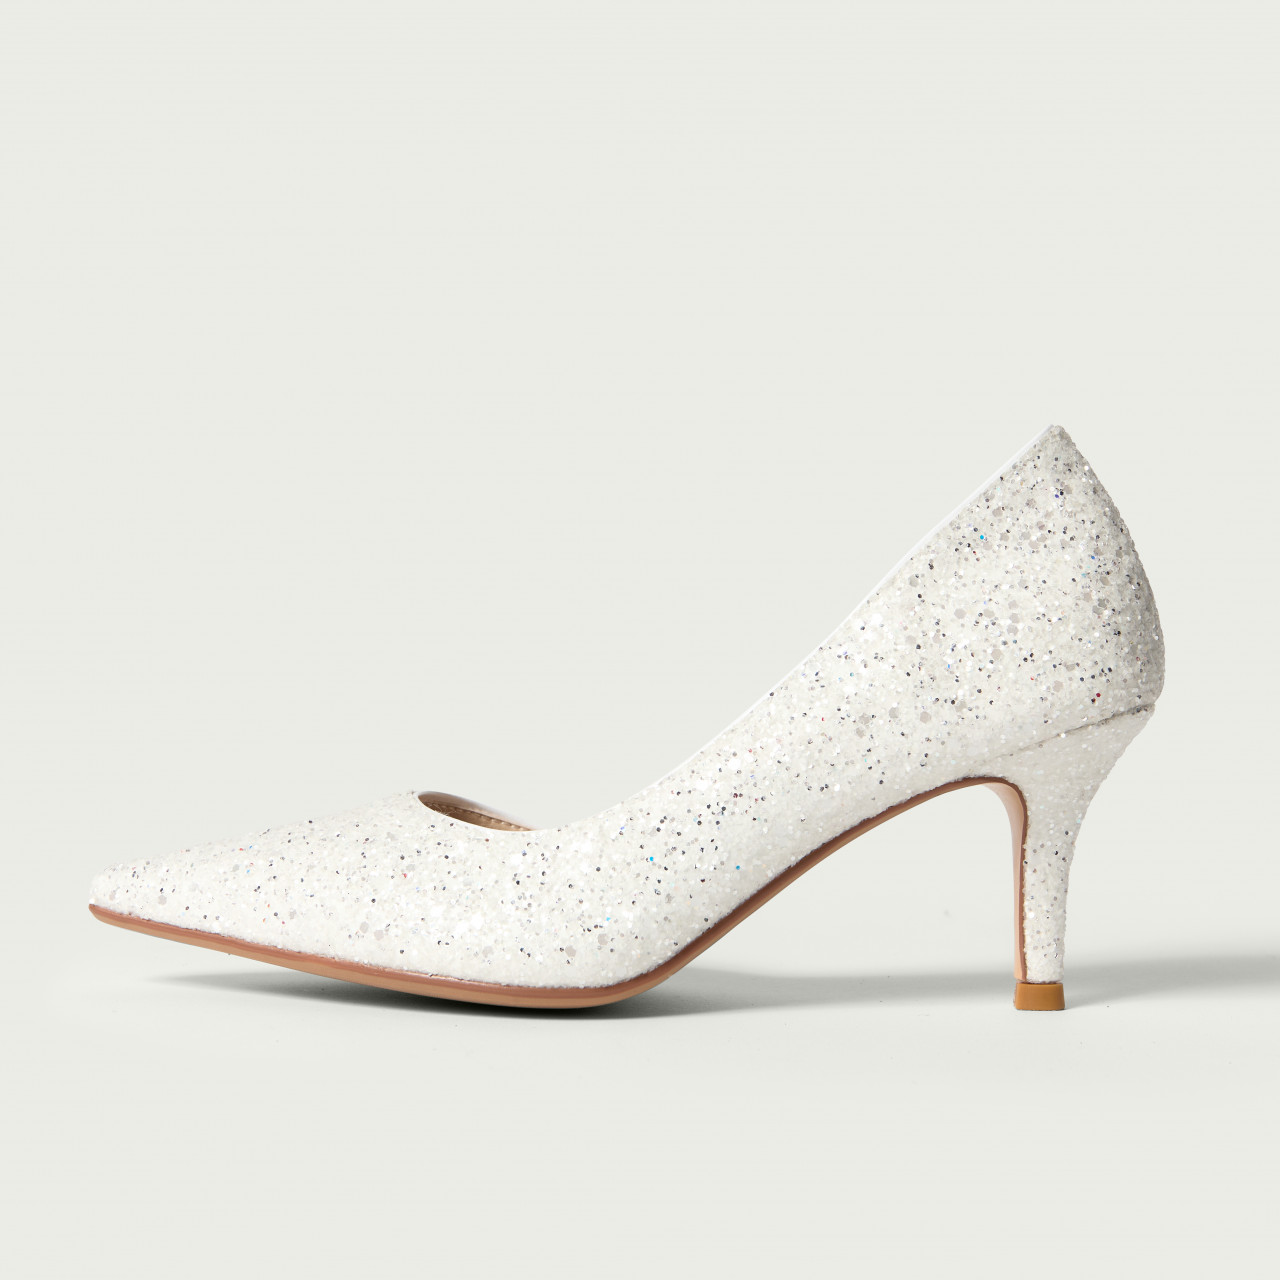 Pantofi Isabela albi de mireasă cu toc mediu și glitter